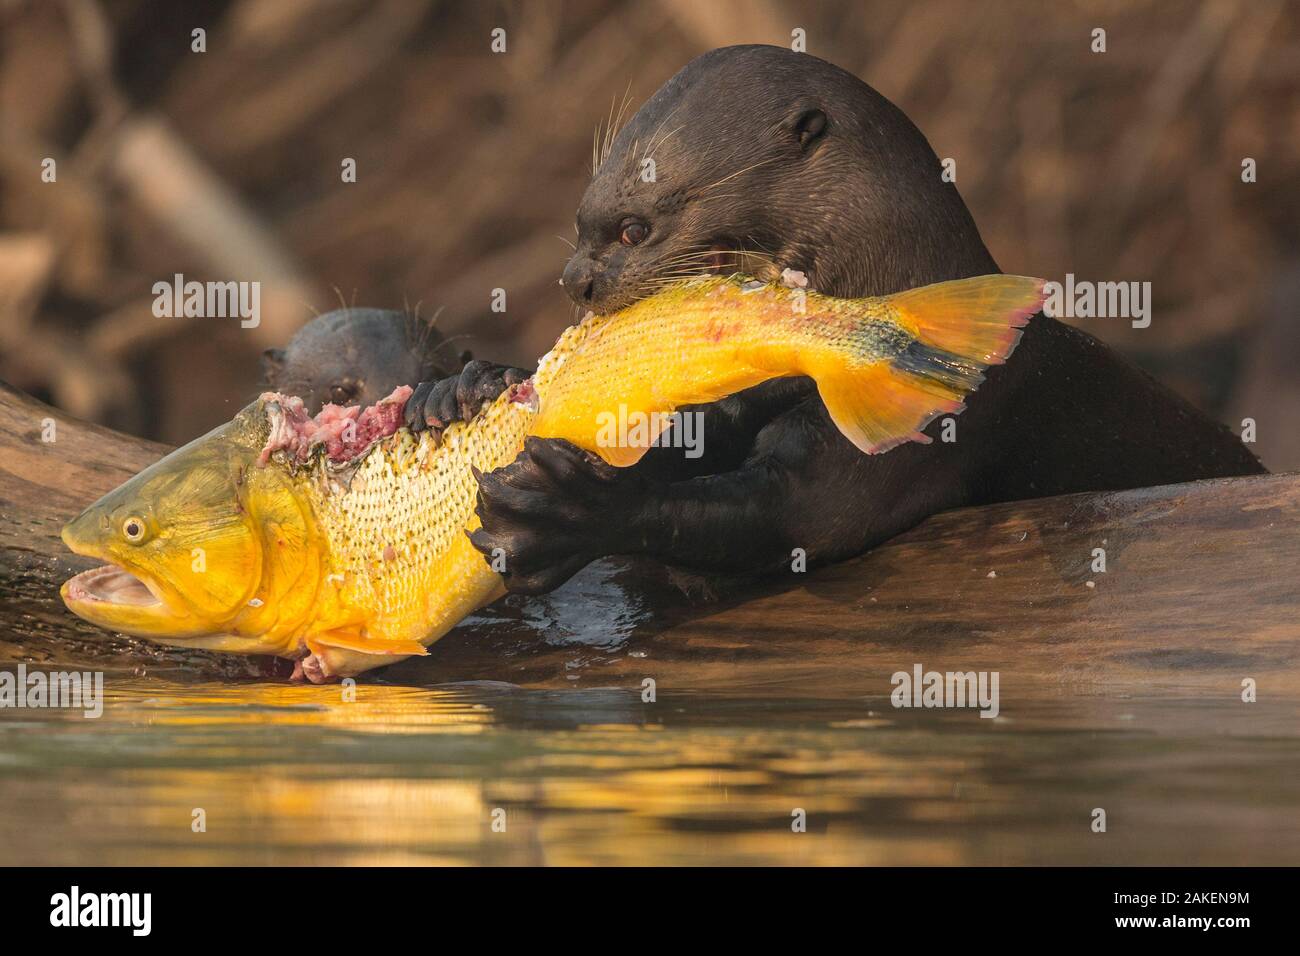 La loutre géante (Pteronura brasiliensis) se nourrissent d'un Golden dorado (Salminus brasiliensis) Pantanal, Brésil. Banque D'Images